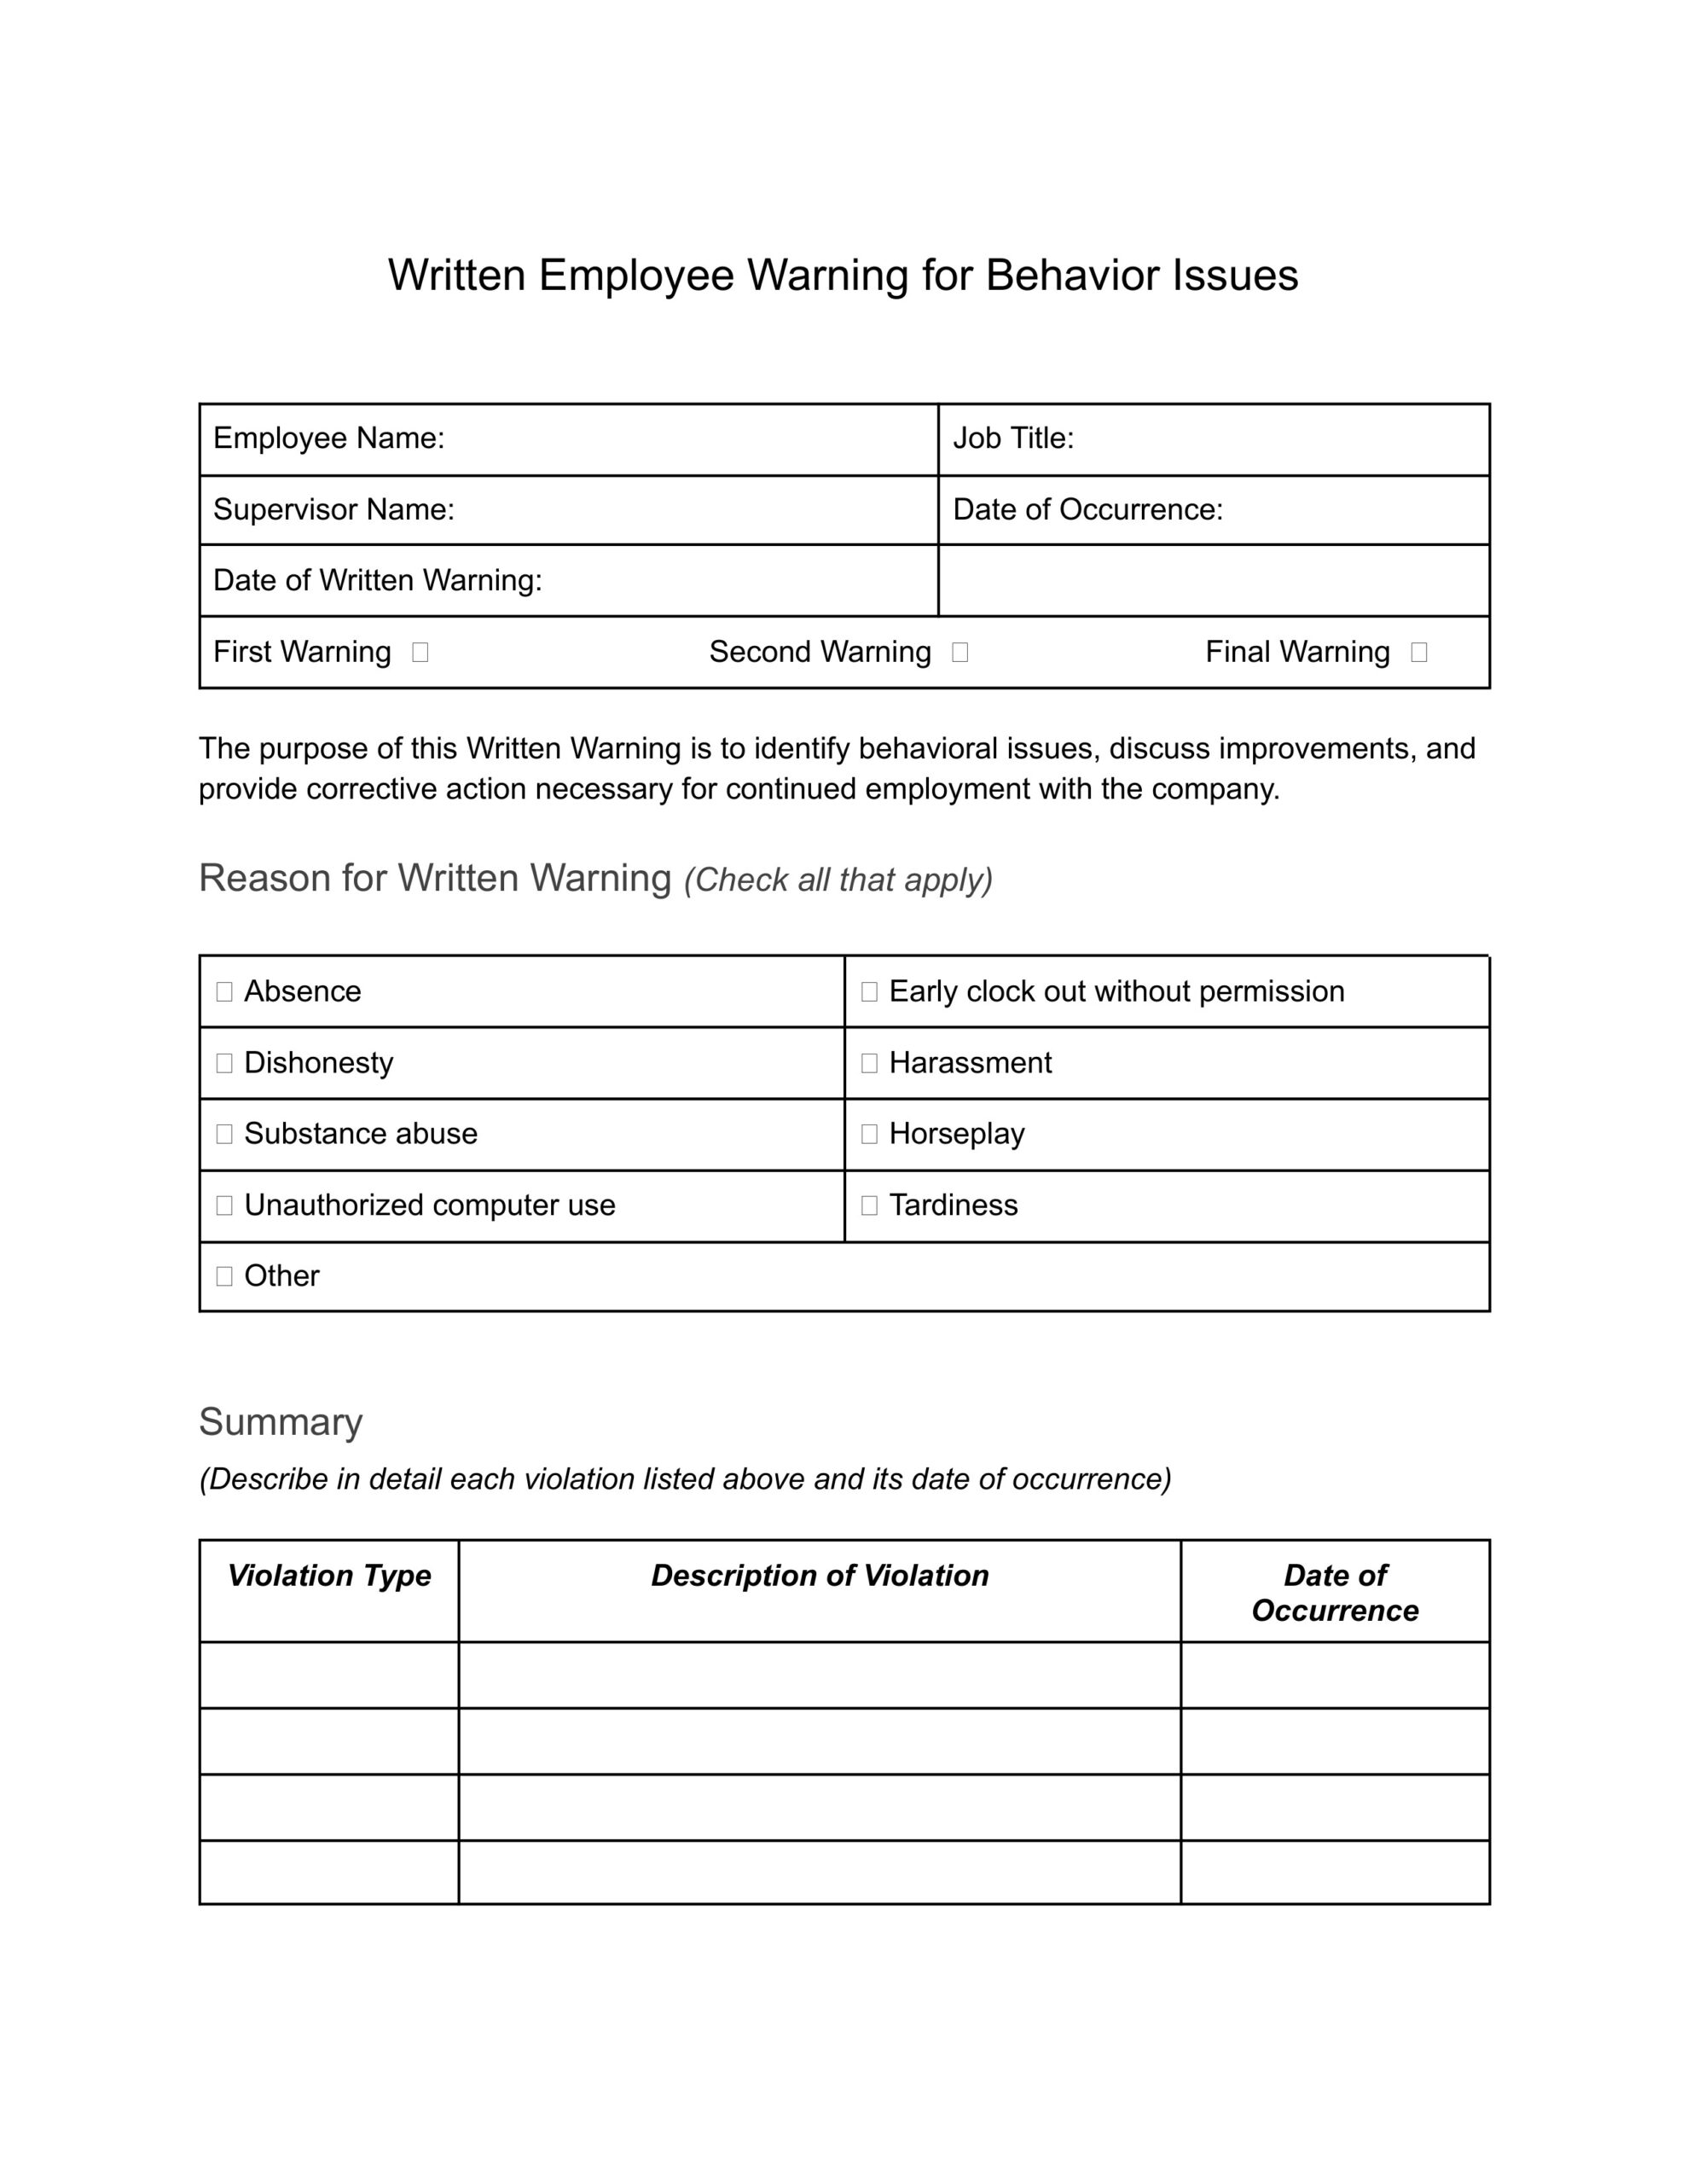 Written Employee Warning for Behavior Issues